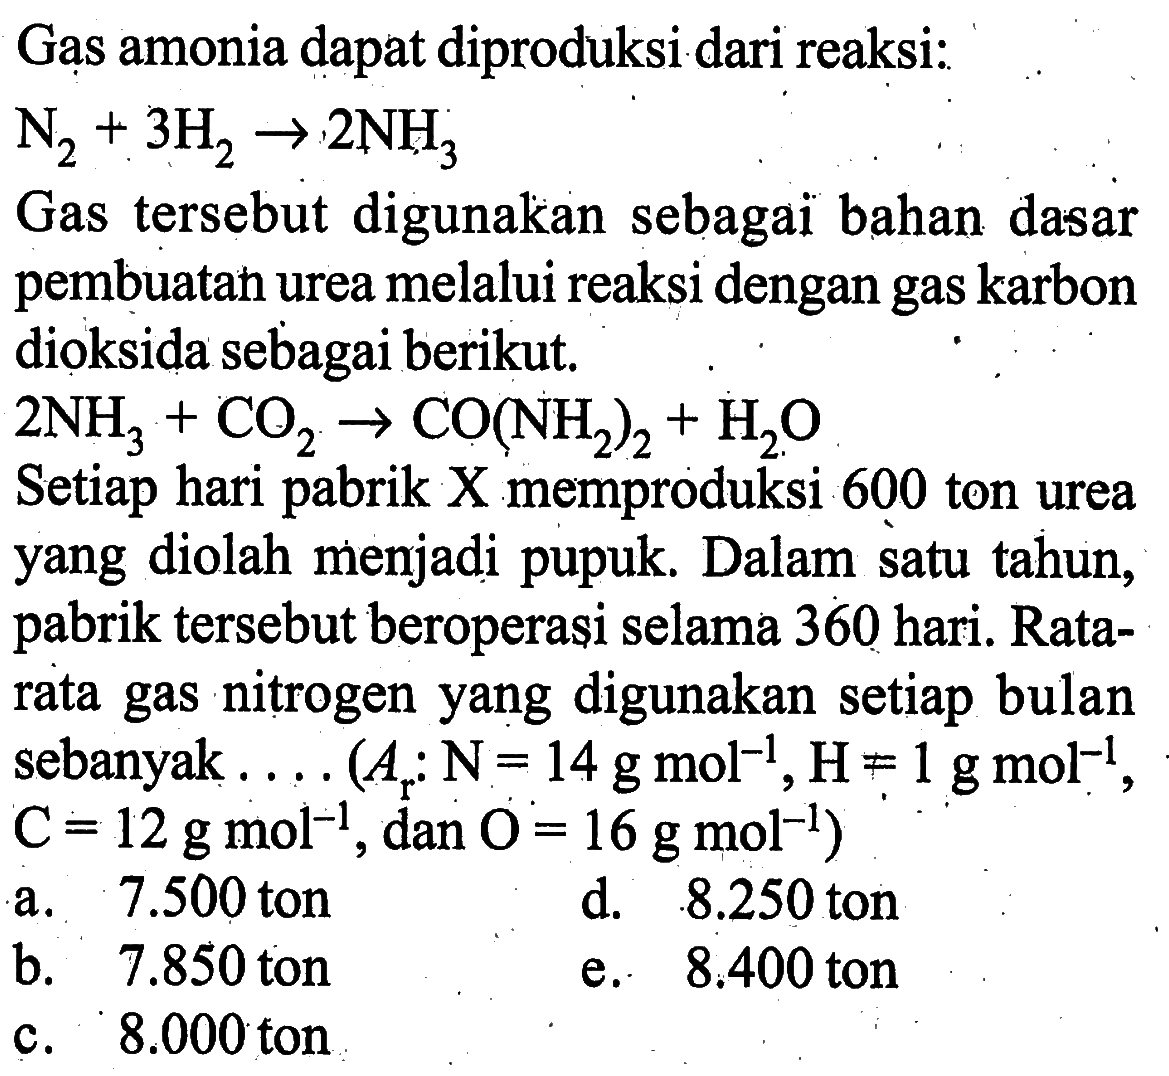 Gas amonia dapat diproduksi dari reaksi: N2+3H2->2NH3 Gas tersebut digunakan sebagai bahan dasar pembuatan urea melalui reaksi dengan gas karbon dioksida sebagai berikut. 2NH3+CO2->CO(NH2)2+H2O Setiap hari pabrik X memproduksi 600 ton urea yang diolah menjadi pupuk. Dalam satu tahun, pabrik tersebut beroperasi selama 360 hari. Ratarata gas nitrogen yang digunakan setiap bulan sebanyak .... (Ar N=14 gmol^-1, H=1 gmol^-1, C=12 gmol^-1, dan. O=16 gmol^-1) 